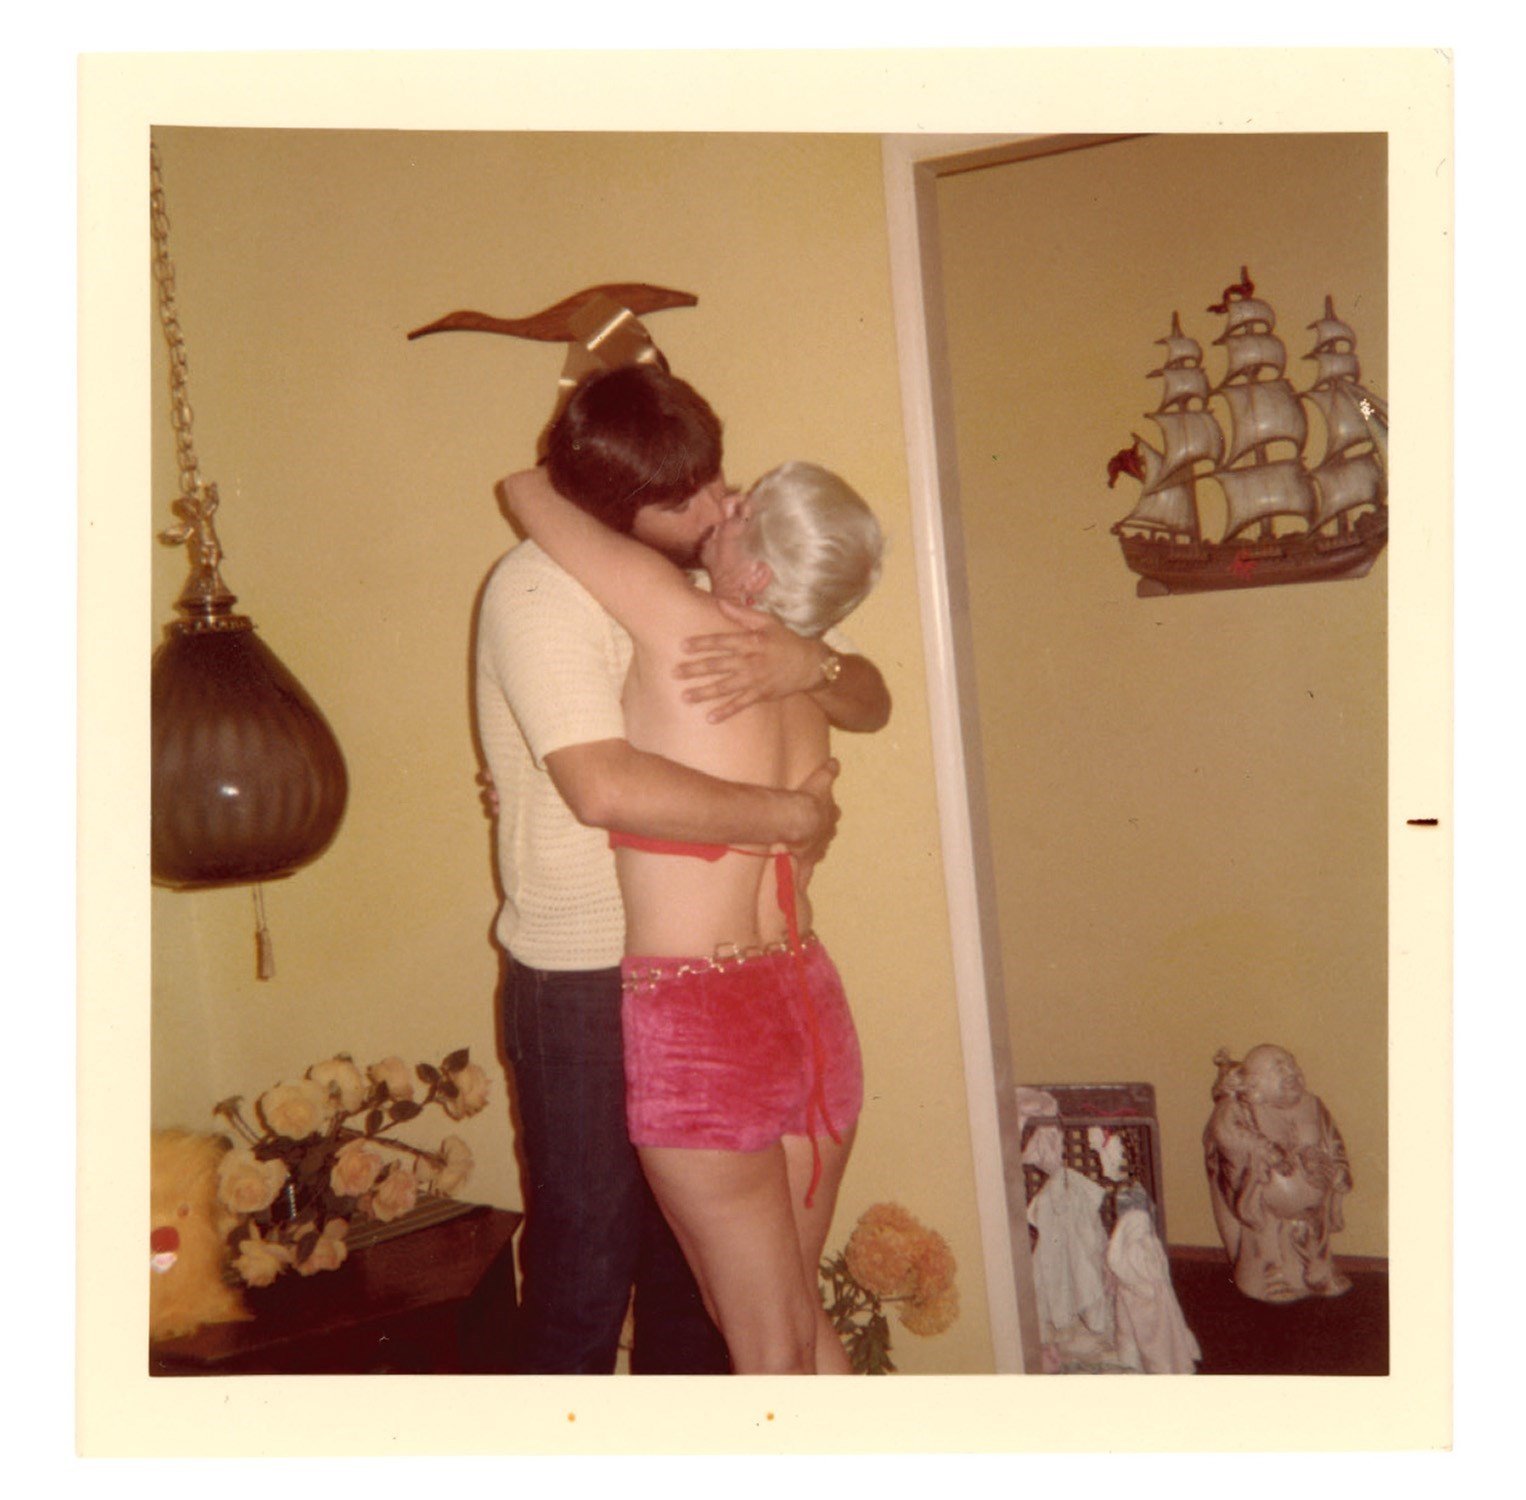 Машина времени: архивные фото о том, как целовались влюбленные 100 лет назад - фото 486036